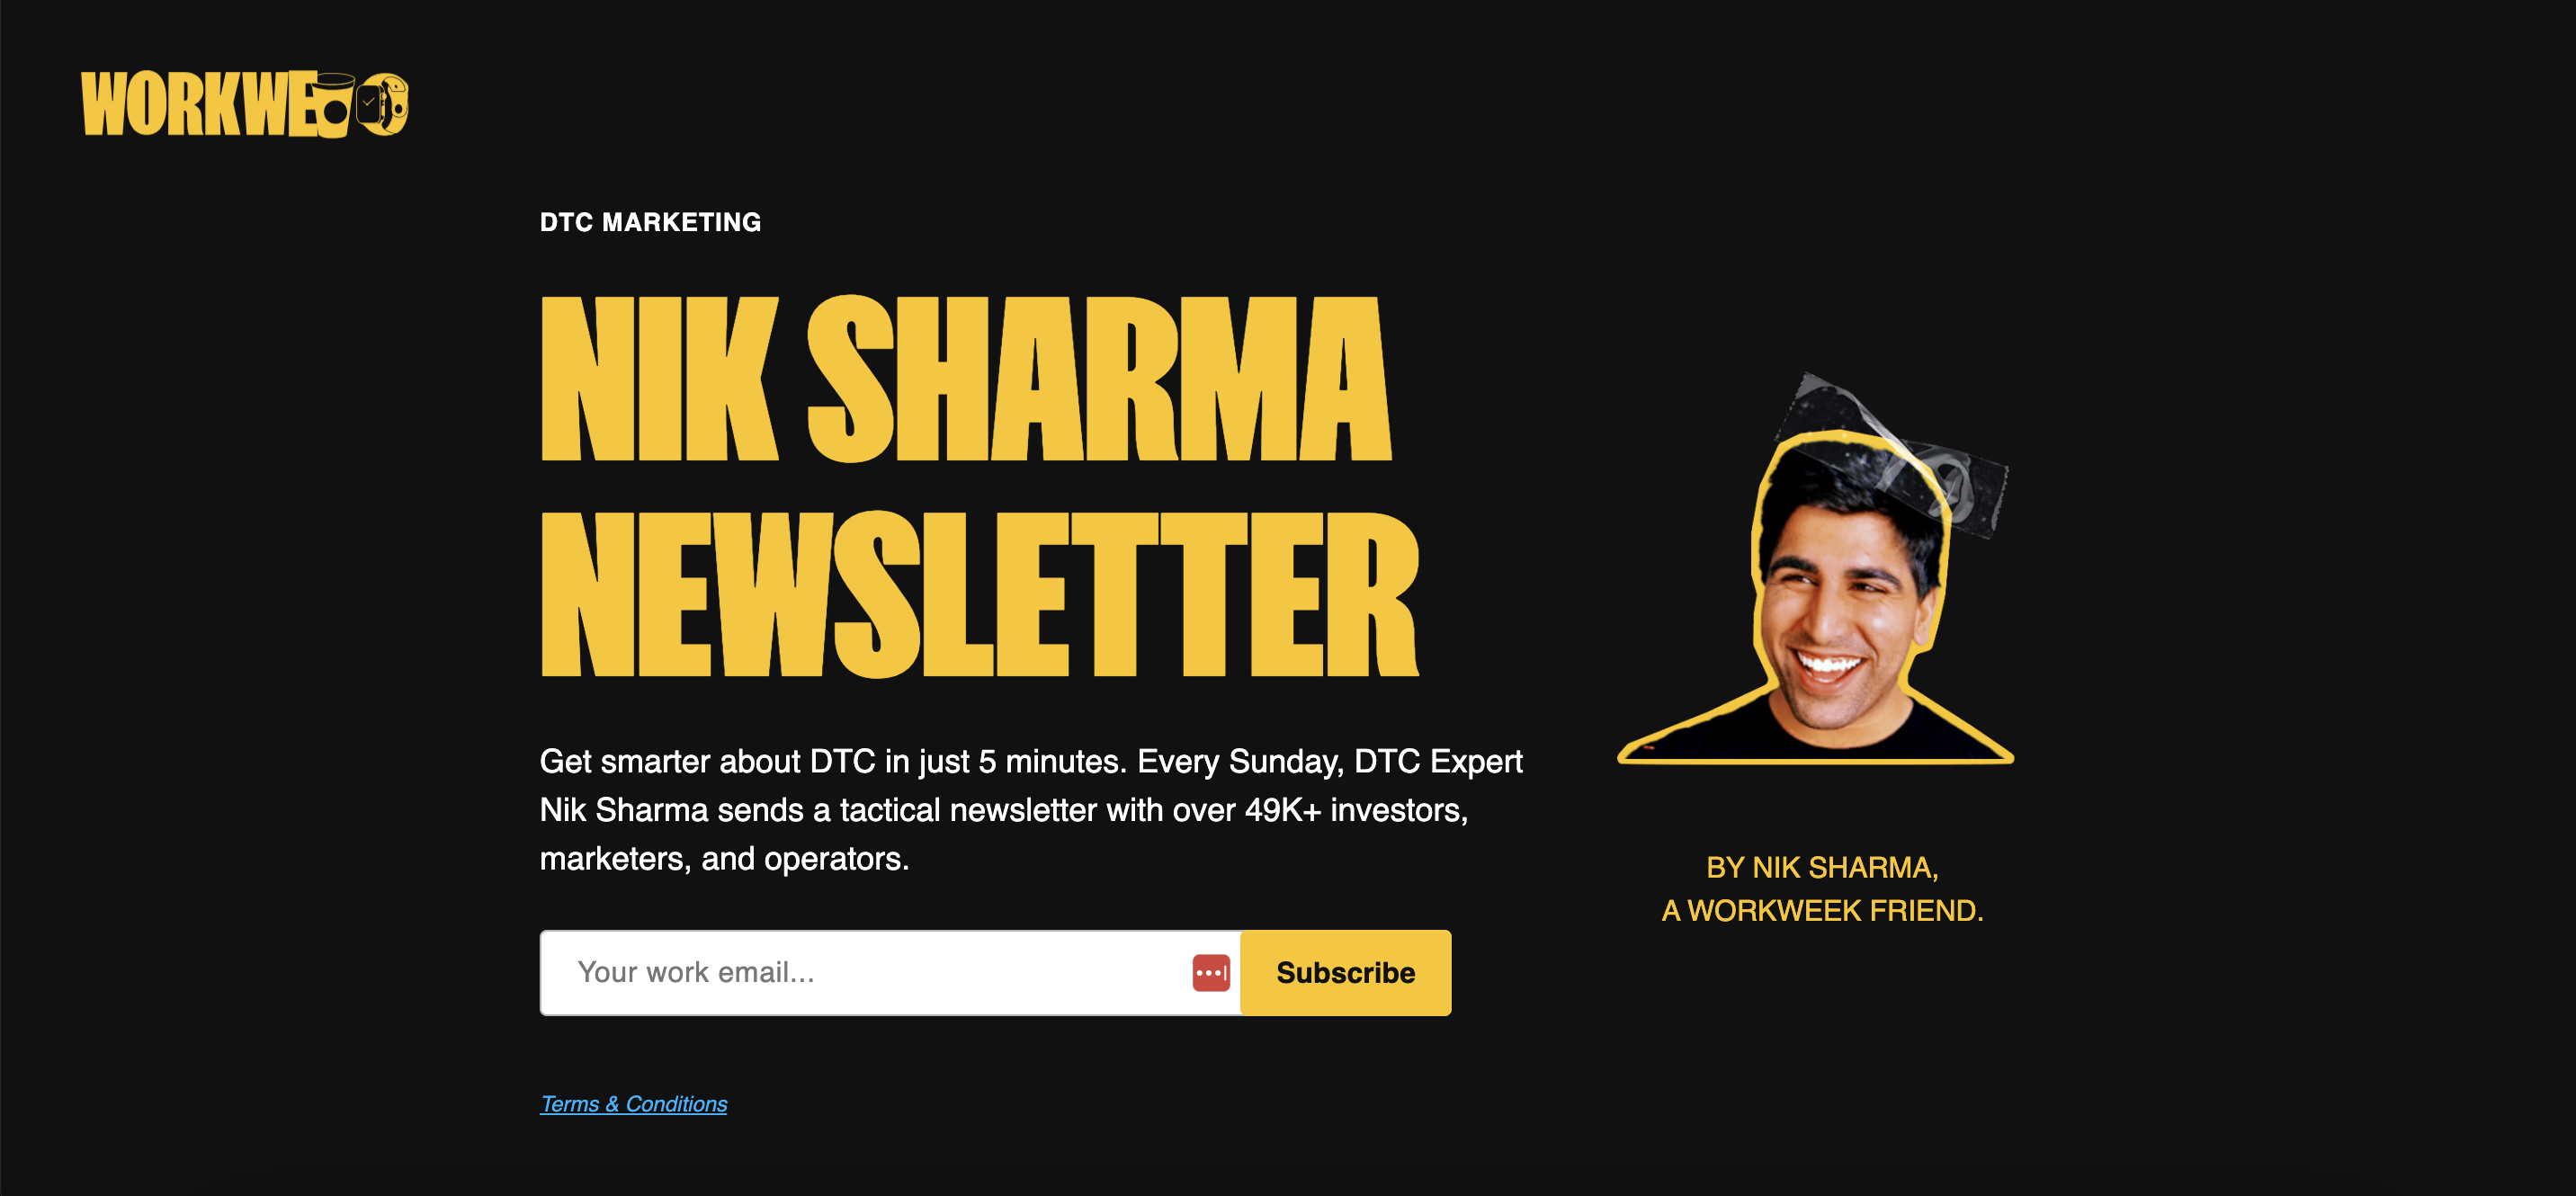 Nick Sharma のニュースレターでは、毎週日曜日に最新の e コマース ニュースを週刊ニュースレターで共有しています。